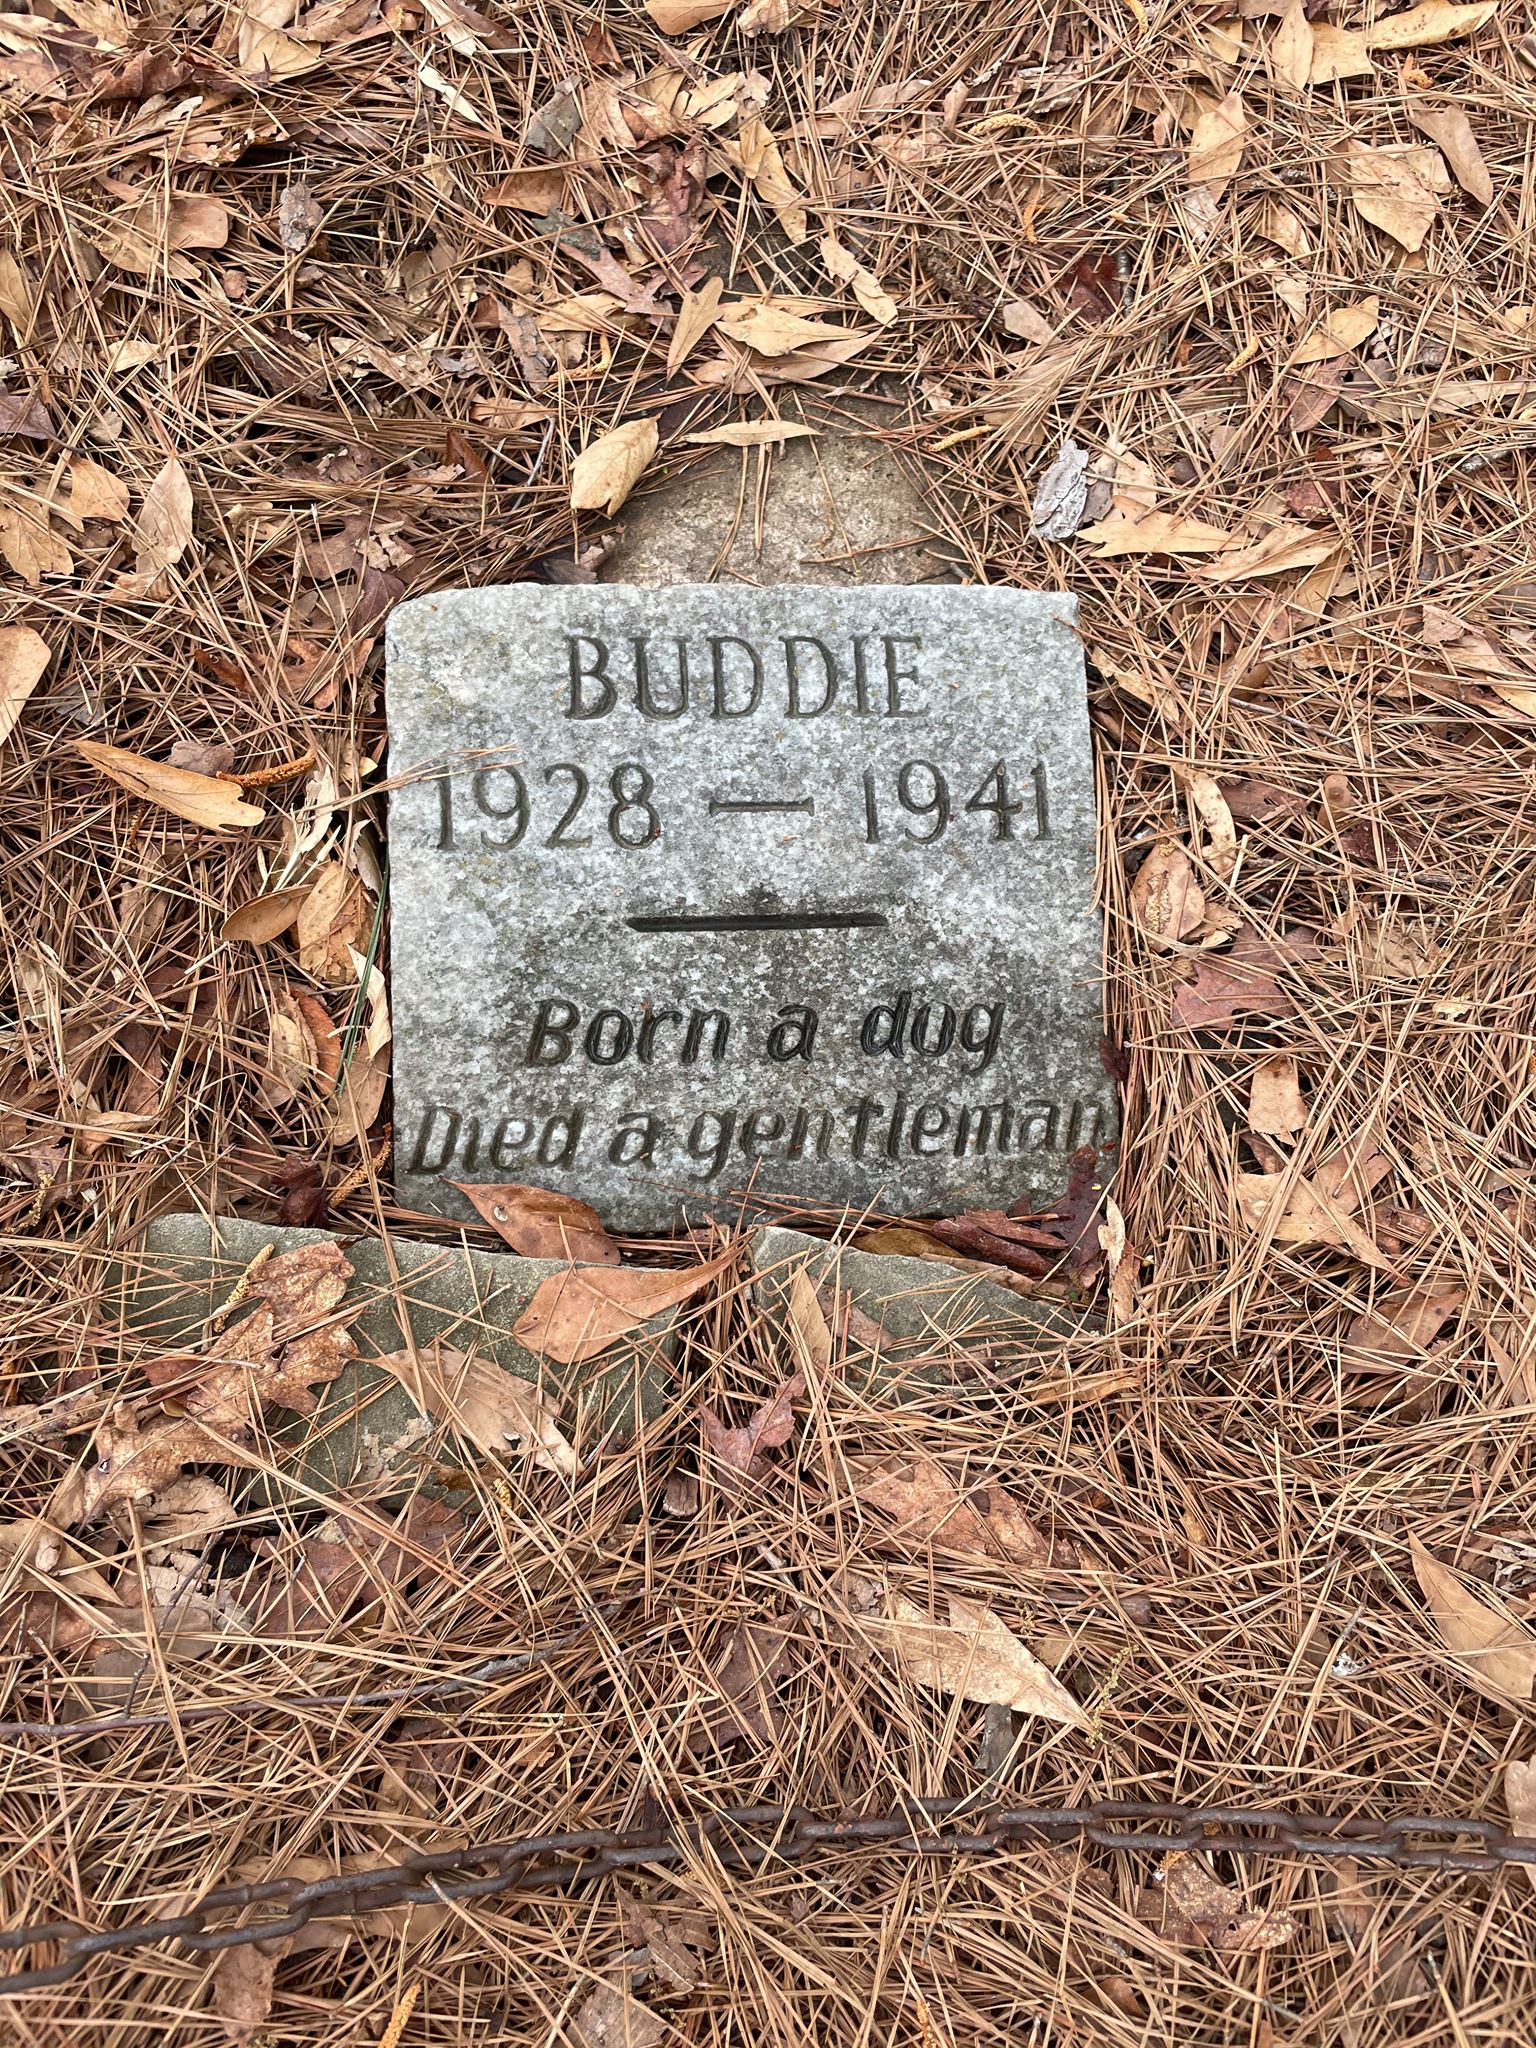 Grabstein mit Gravur für Buddie, dem Helden